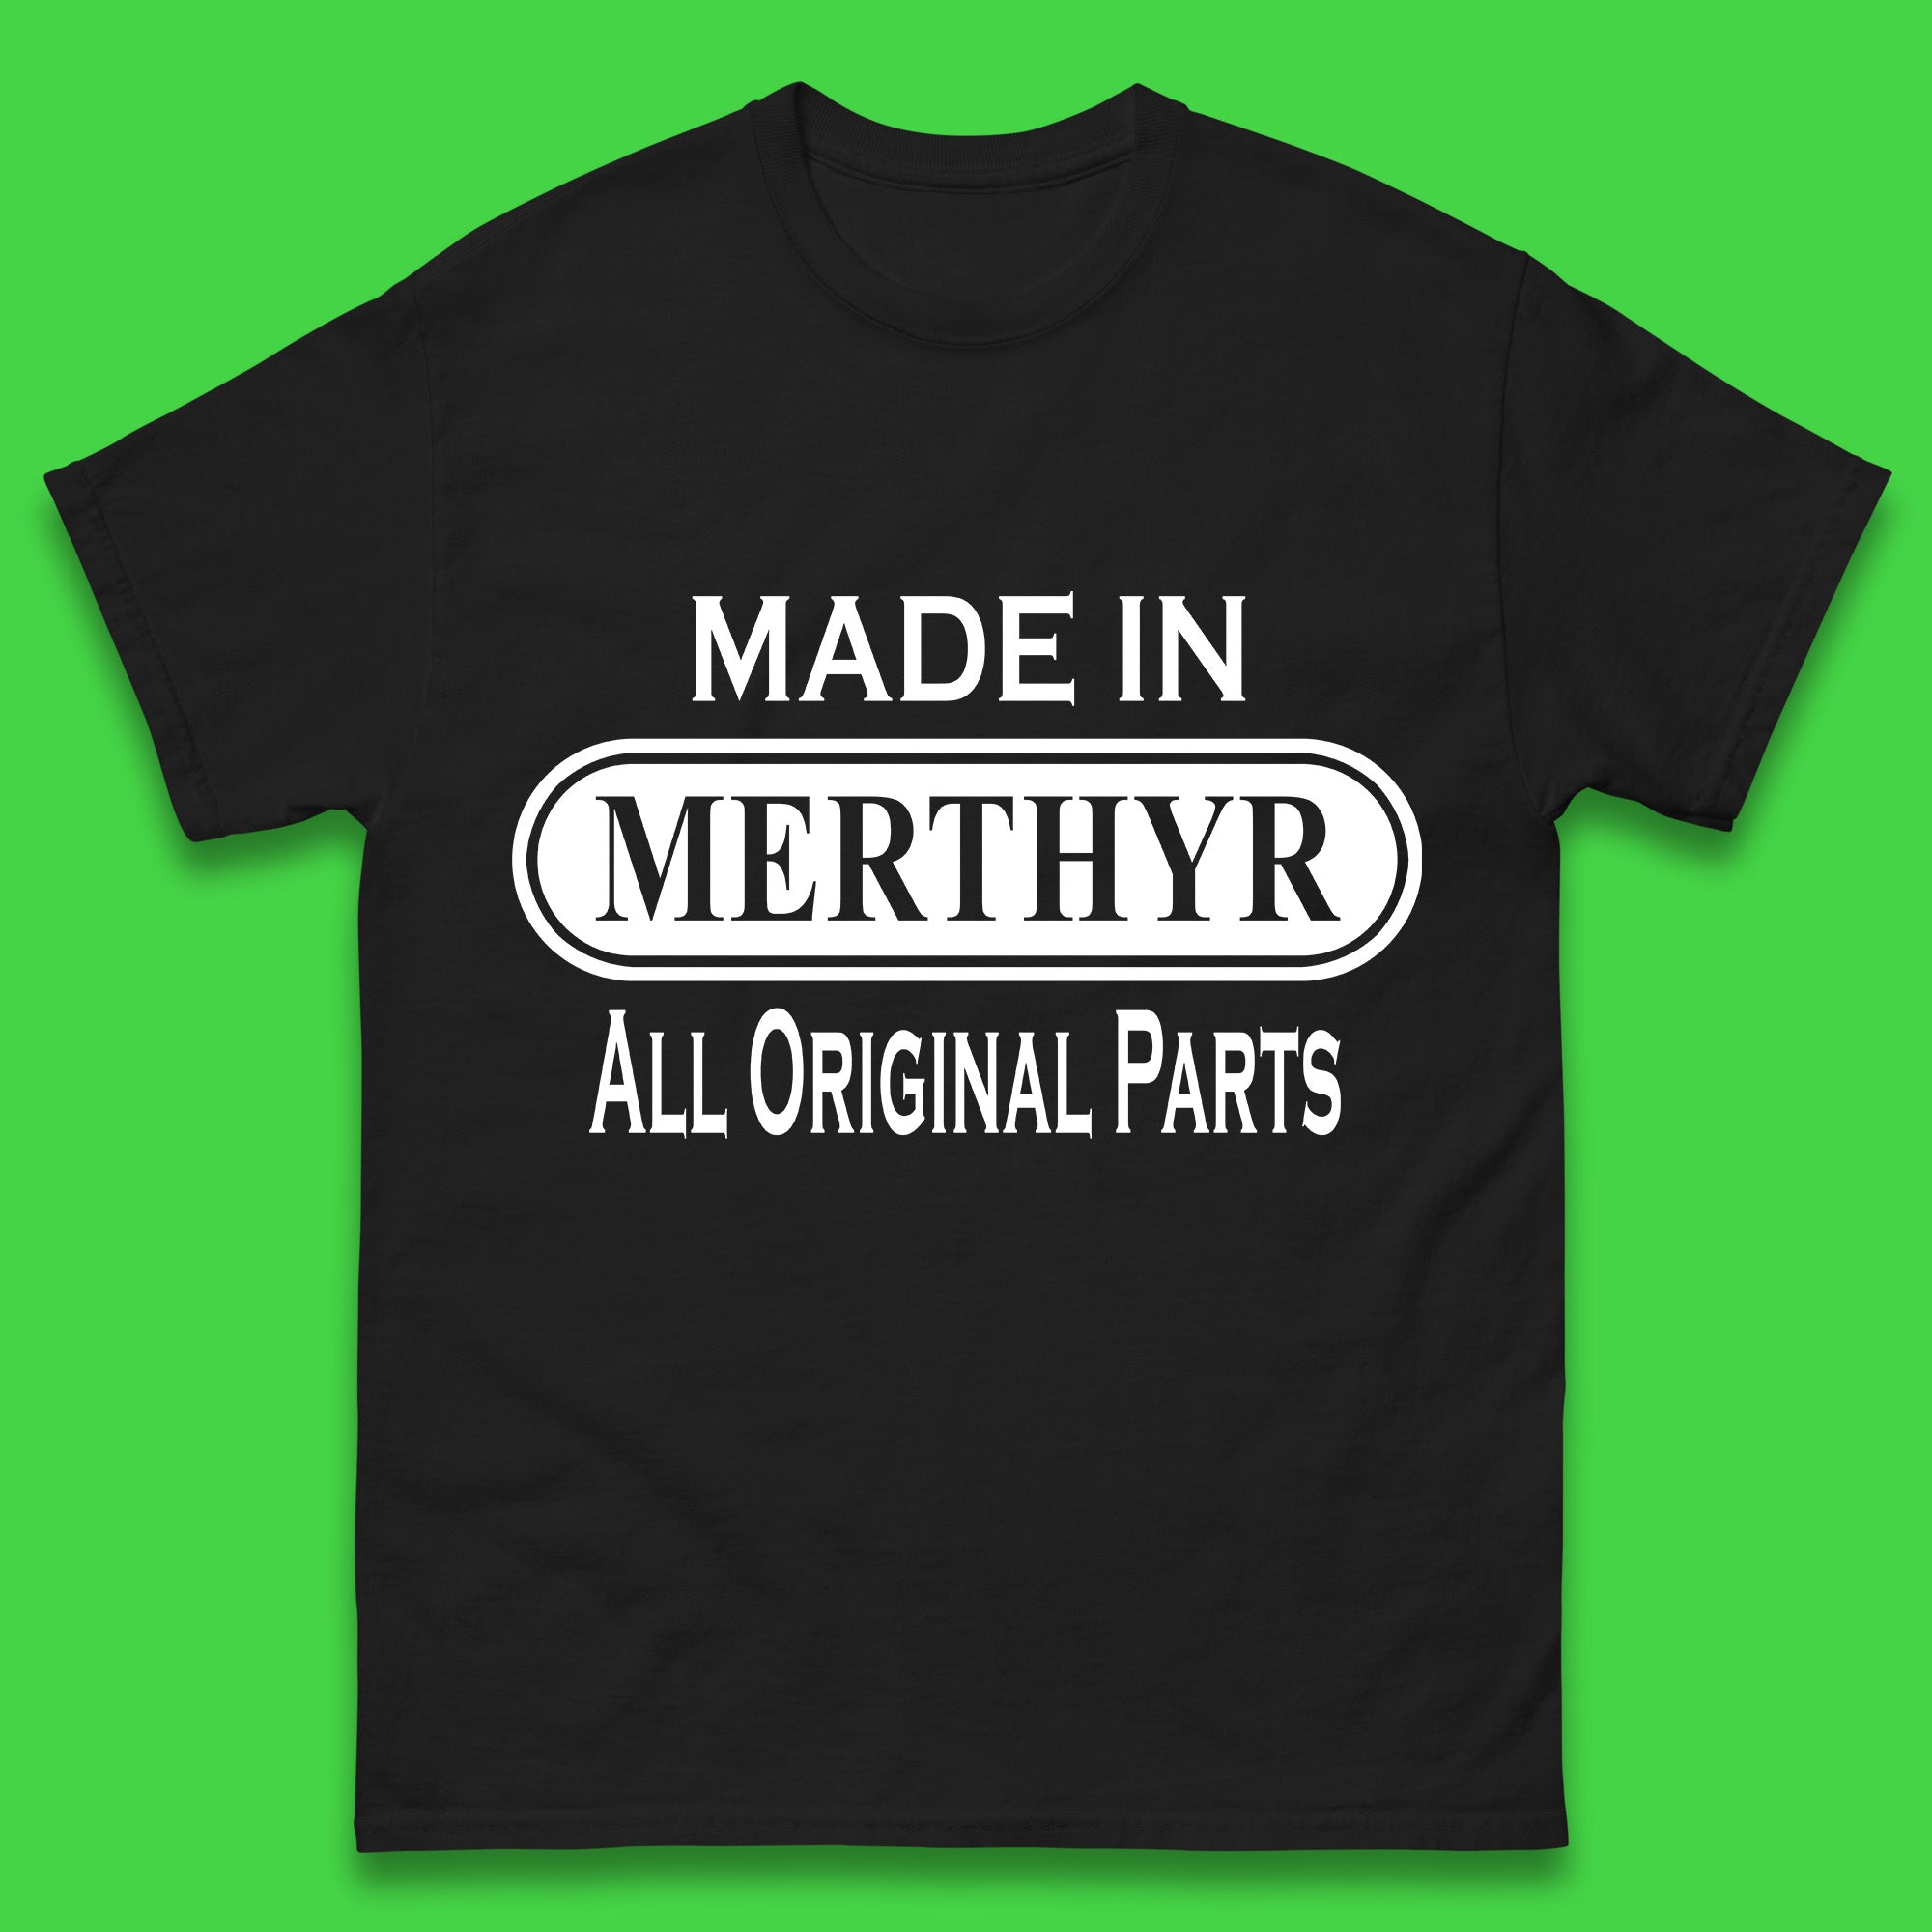 Made In Merthyr All Original Parts Vintage Retro Birthday Merthyr Tydfil Town In Wales Mens Tee Top